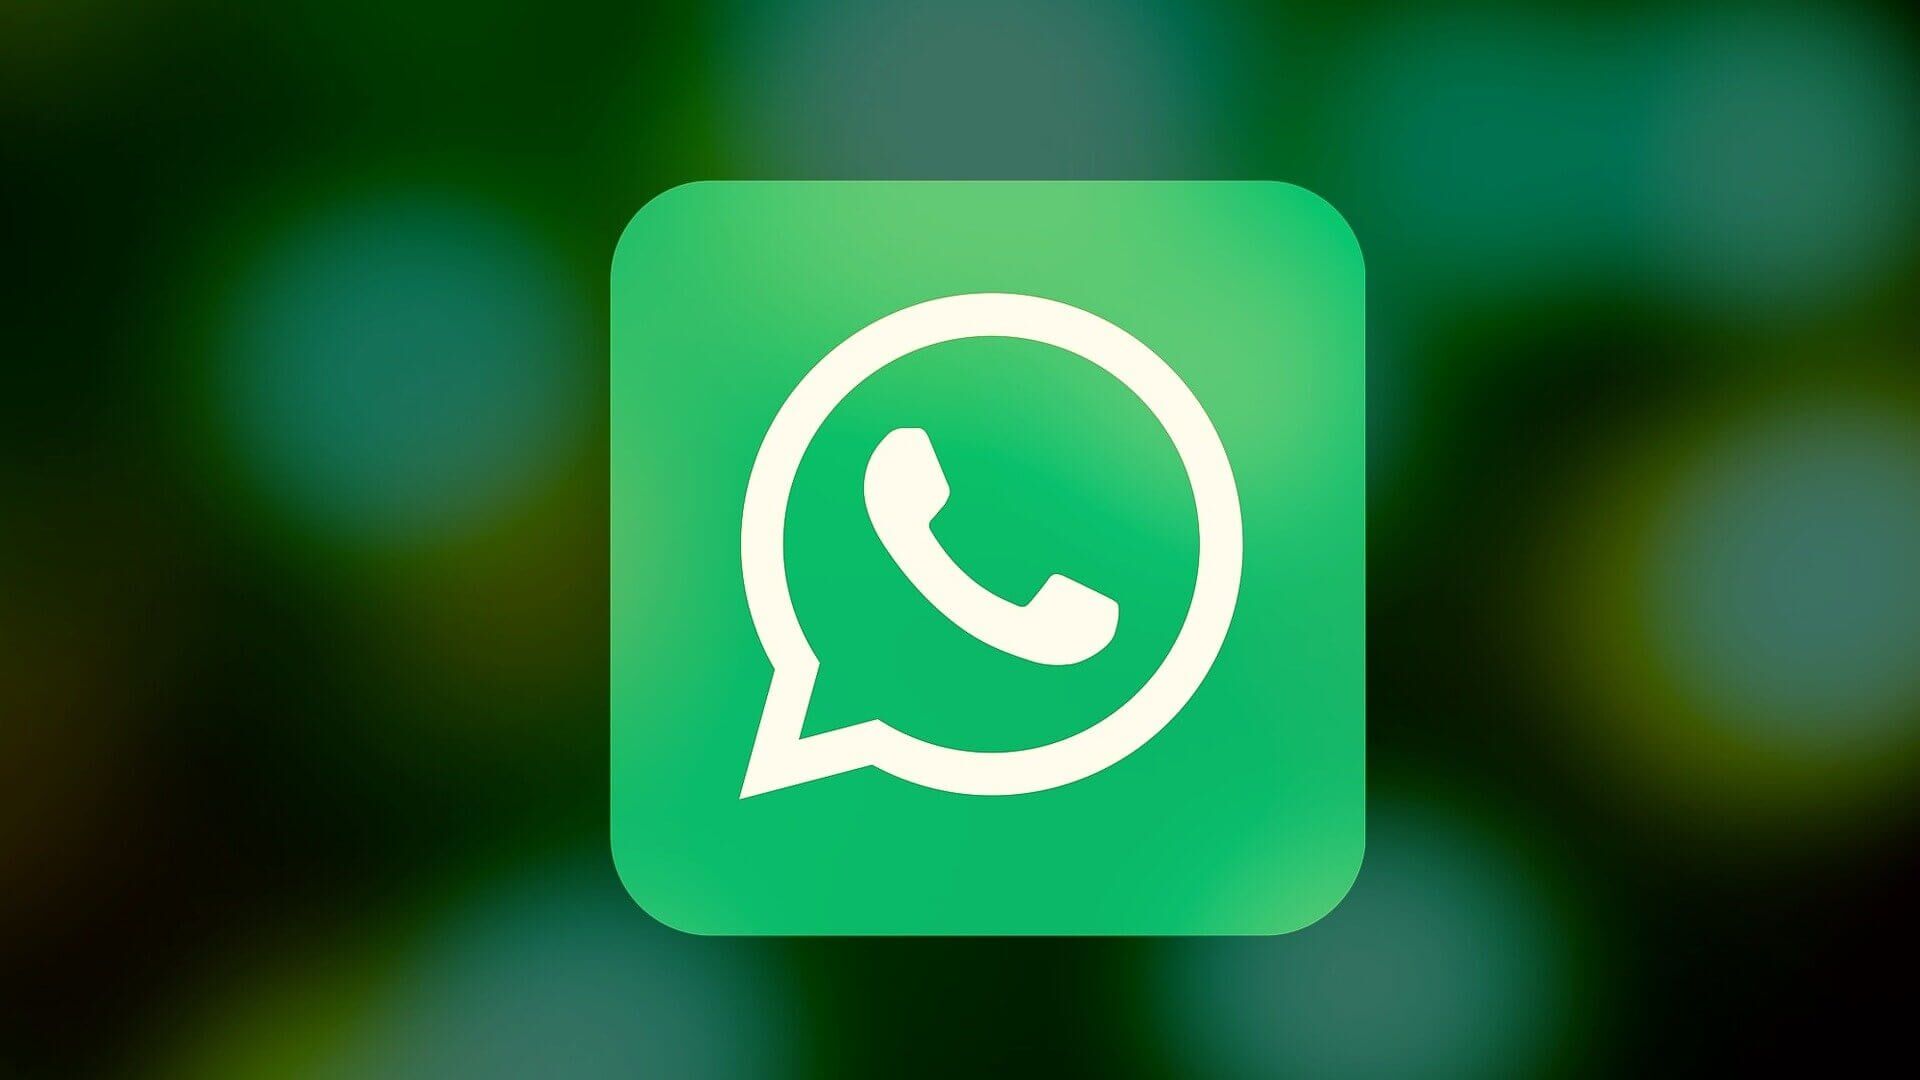 خطأ عدم إمكانية بدء الكاميرا على WhatsApp لنظام Android - %categories